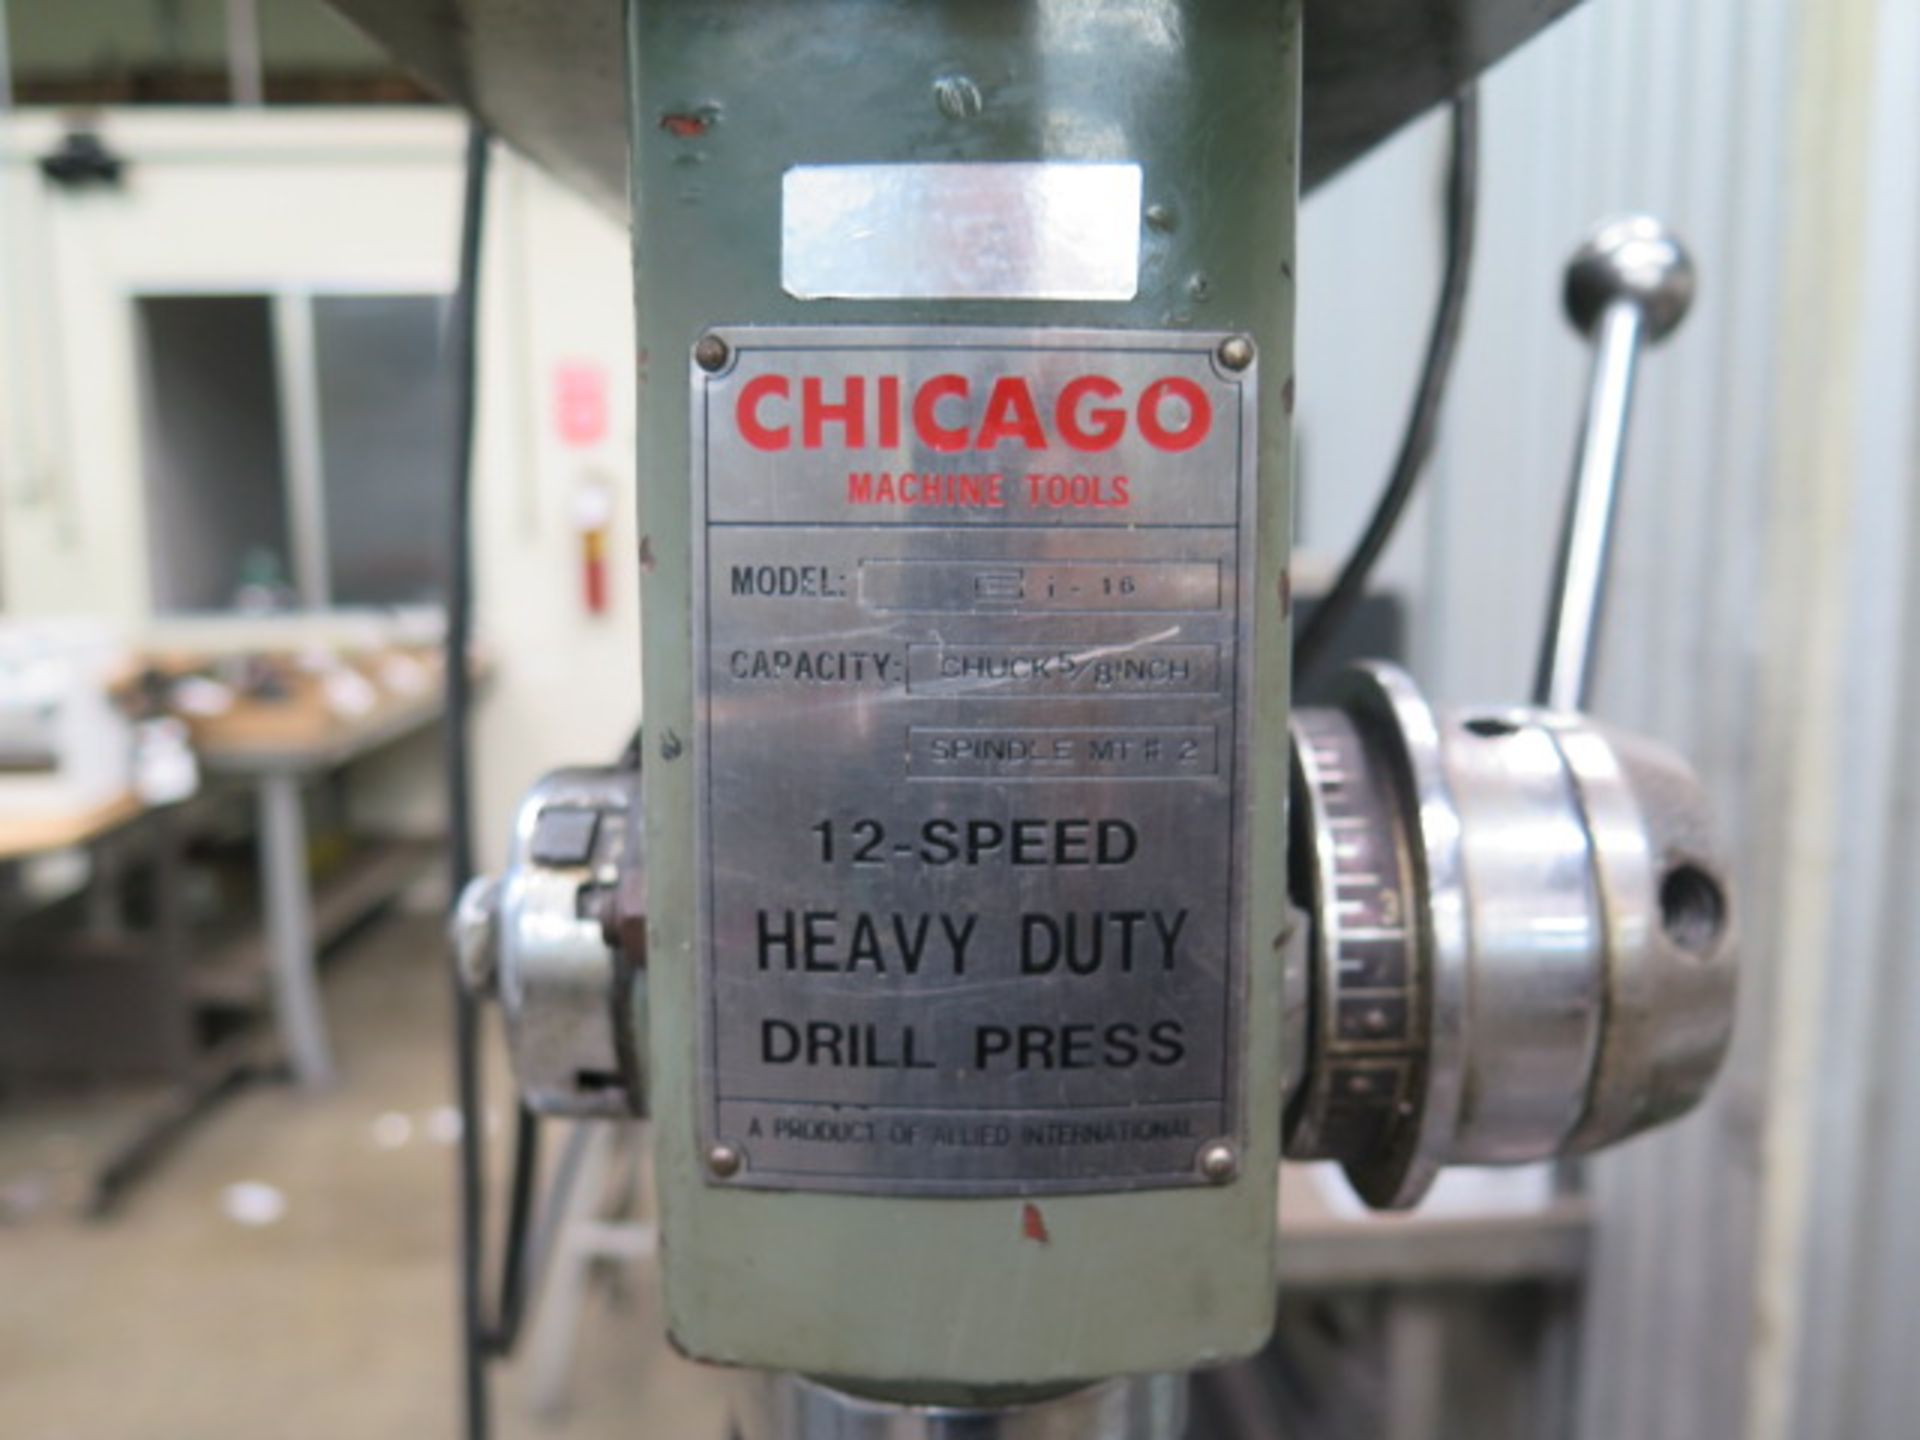 Chicago 12-Speed Bench Model Drill Press w/ Cart (SOLD AS-IS - NO WARRANTY) - Bild 6 aus 6